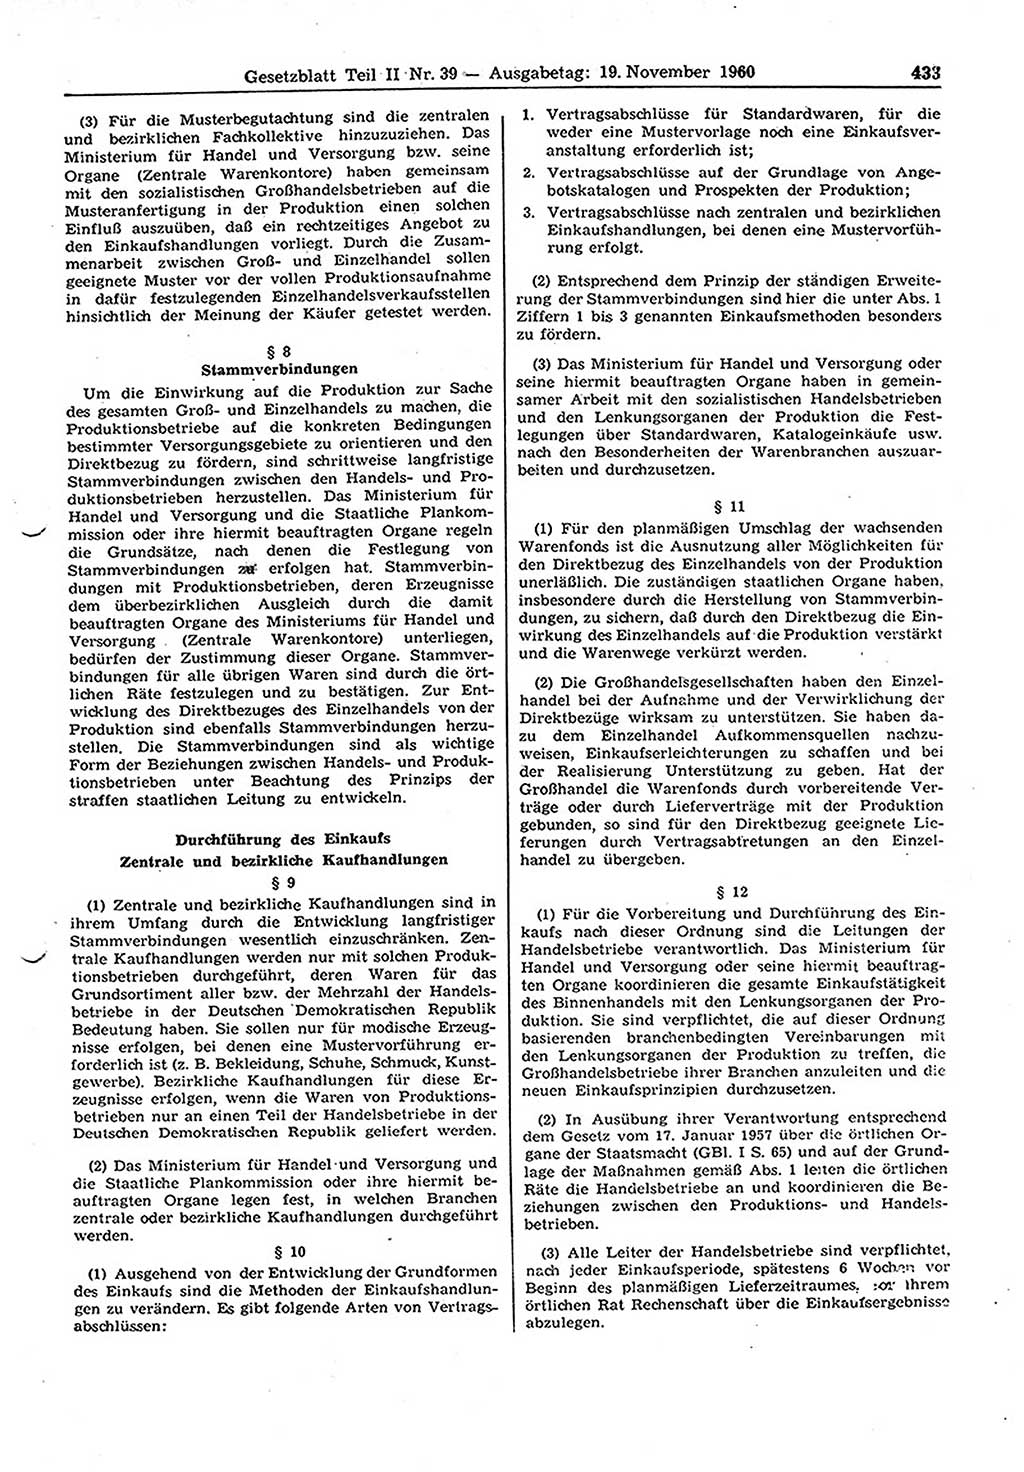 Gesetzblatt (GBl.) der Deutschen Demokratischen Republik (DDR) Teil ⅠⅠ 1960, Seite 433 (GBl. DDR ⅠⅠ 1960, S. 433)